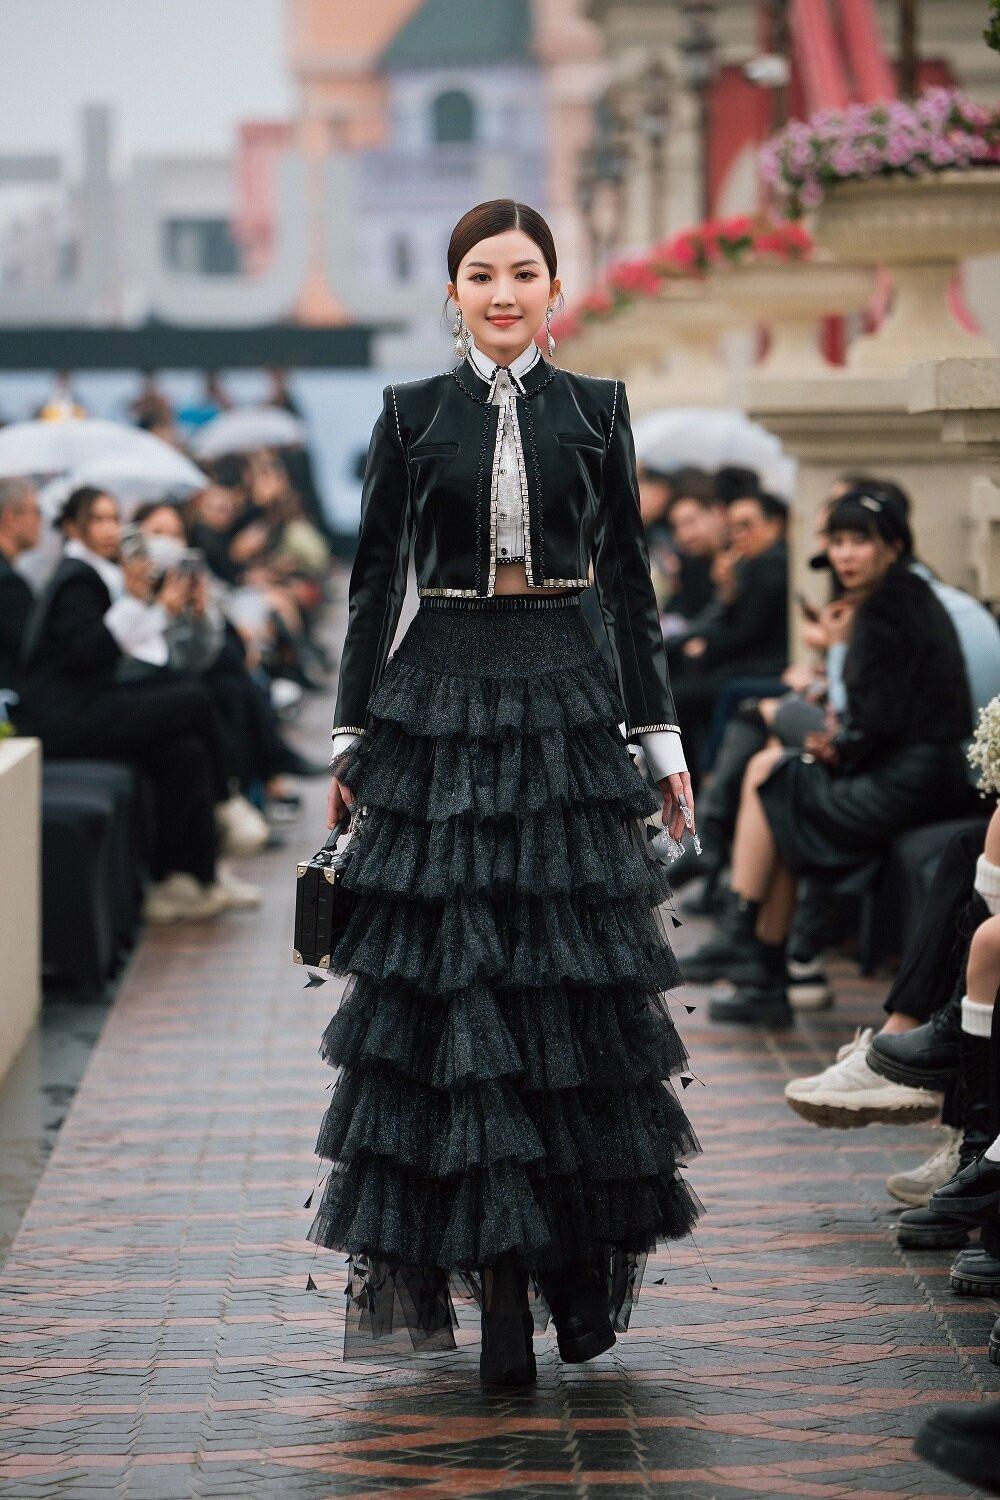 Nối gót Thùy Anh, diễn viên Lương Thanh thể hiện sự đối lập khi catwalk với bộ trang phục màu đen, điểm nhấn hai chiếc crop top kết hợp chân váy maxi.